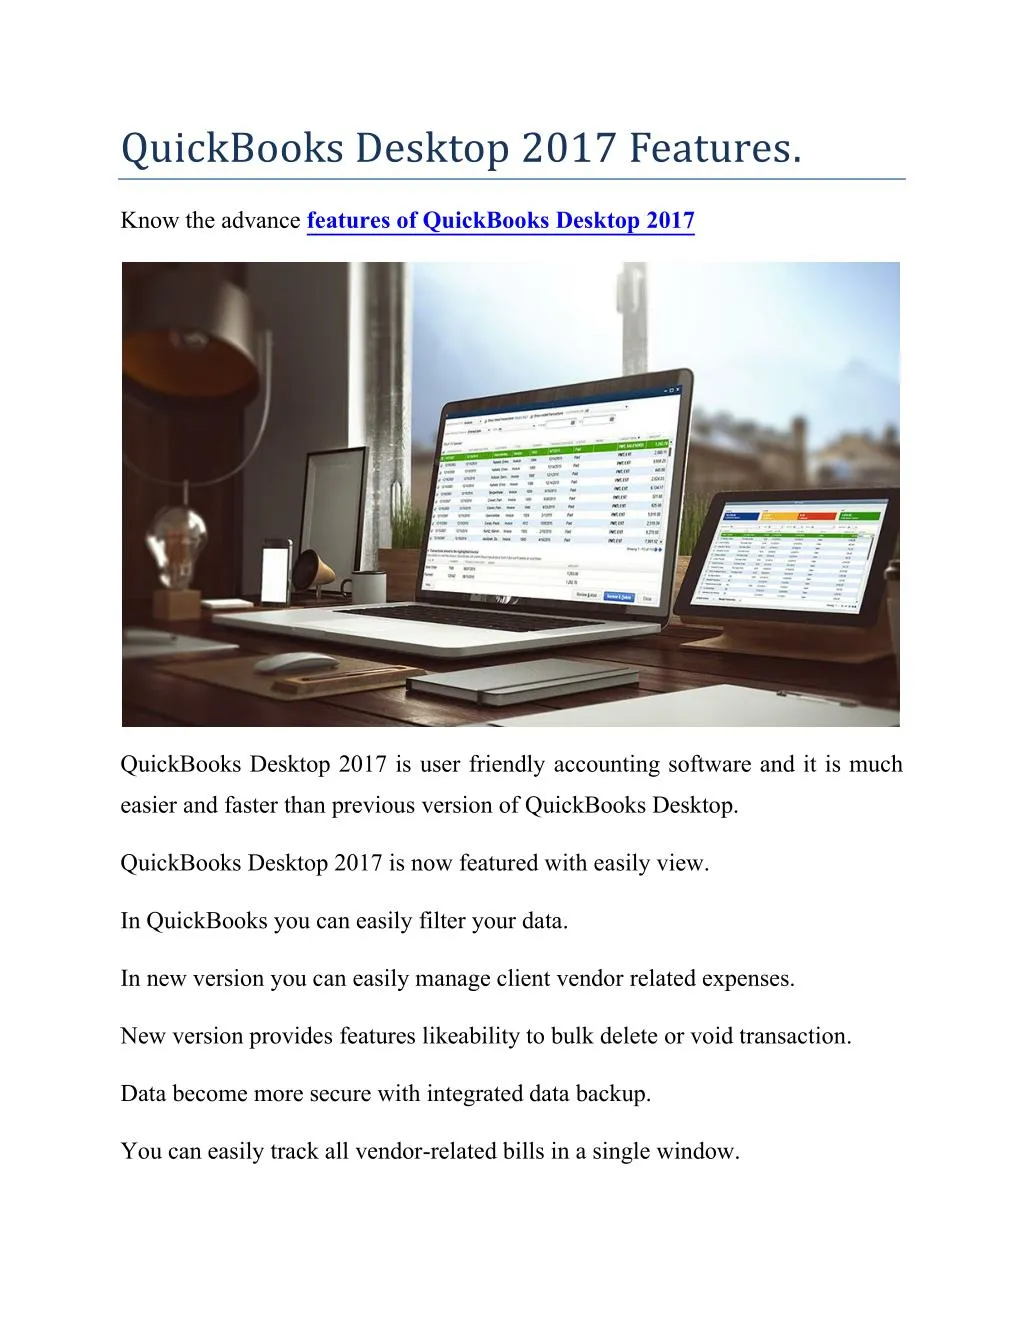 download quickbooks desktop pro 2017 torrent